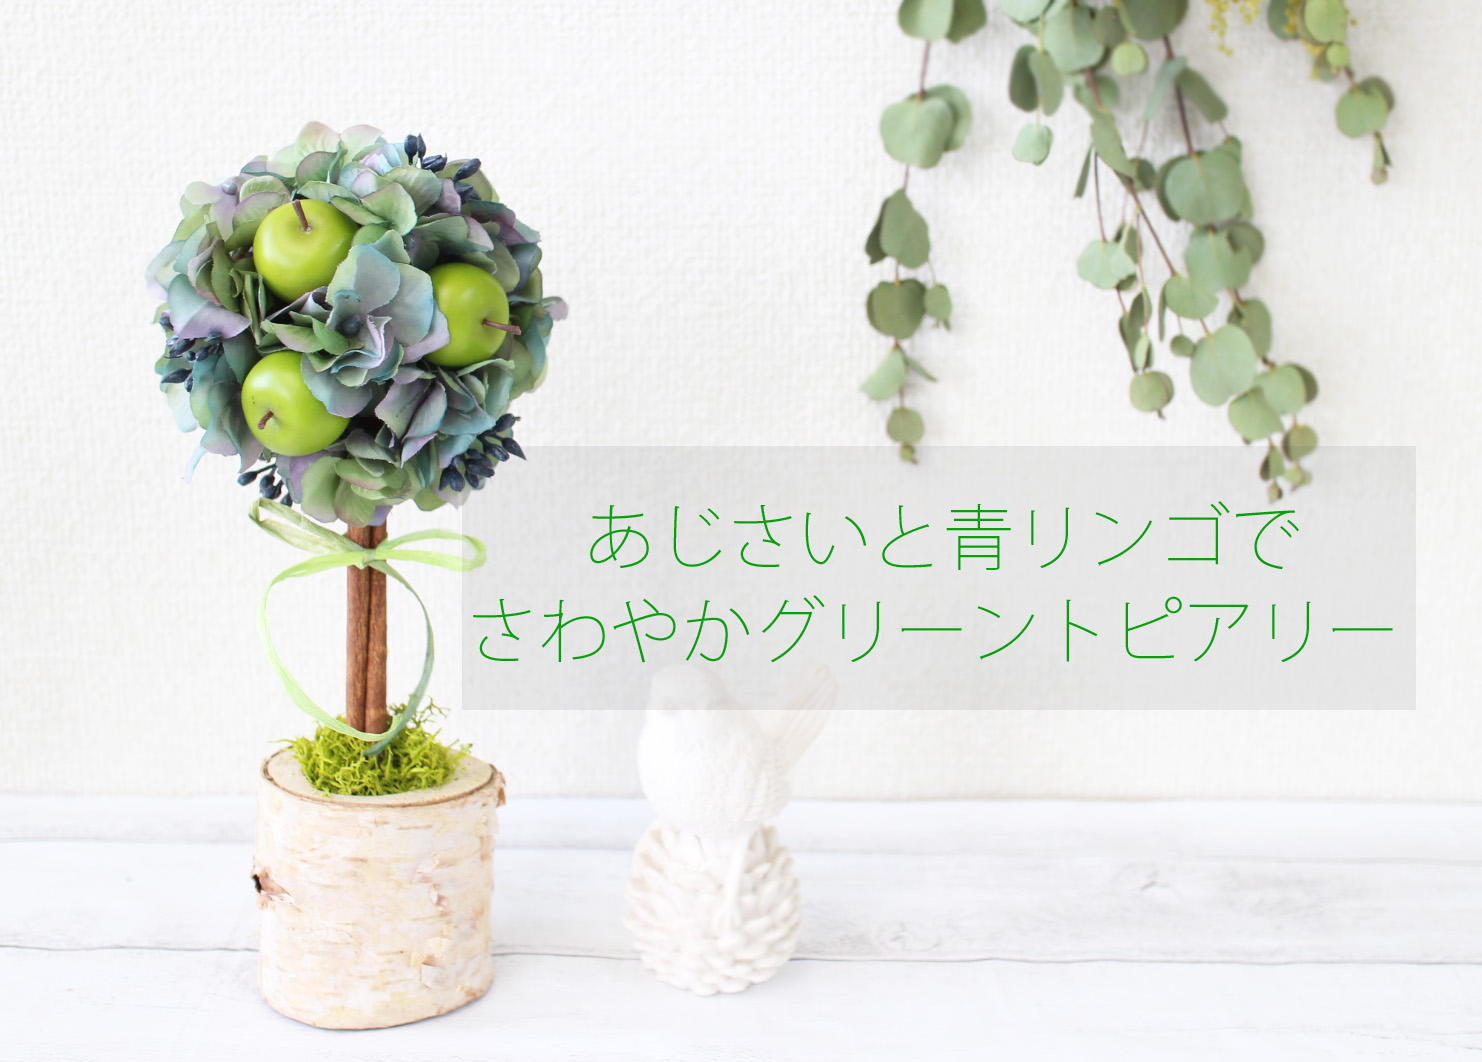 あじさいと青リンゴで さわやかグリーントピアリー フラワーエデュケーションジャパン